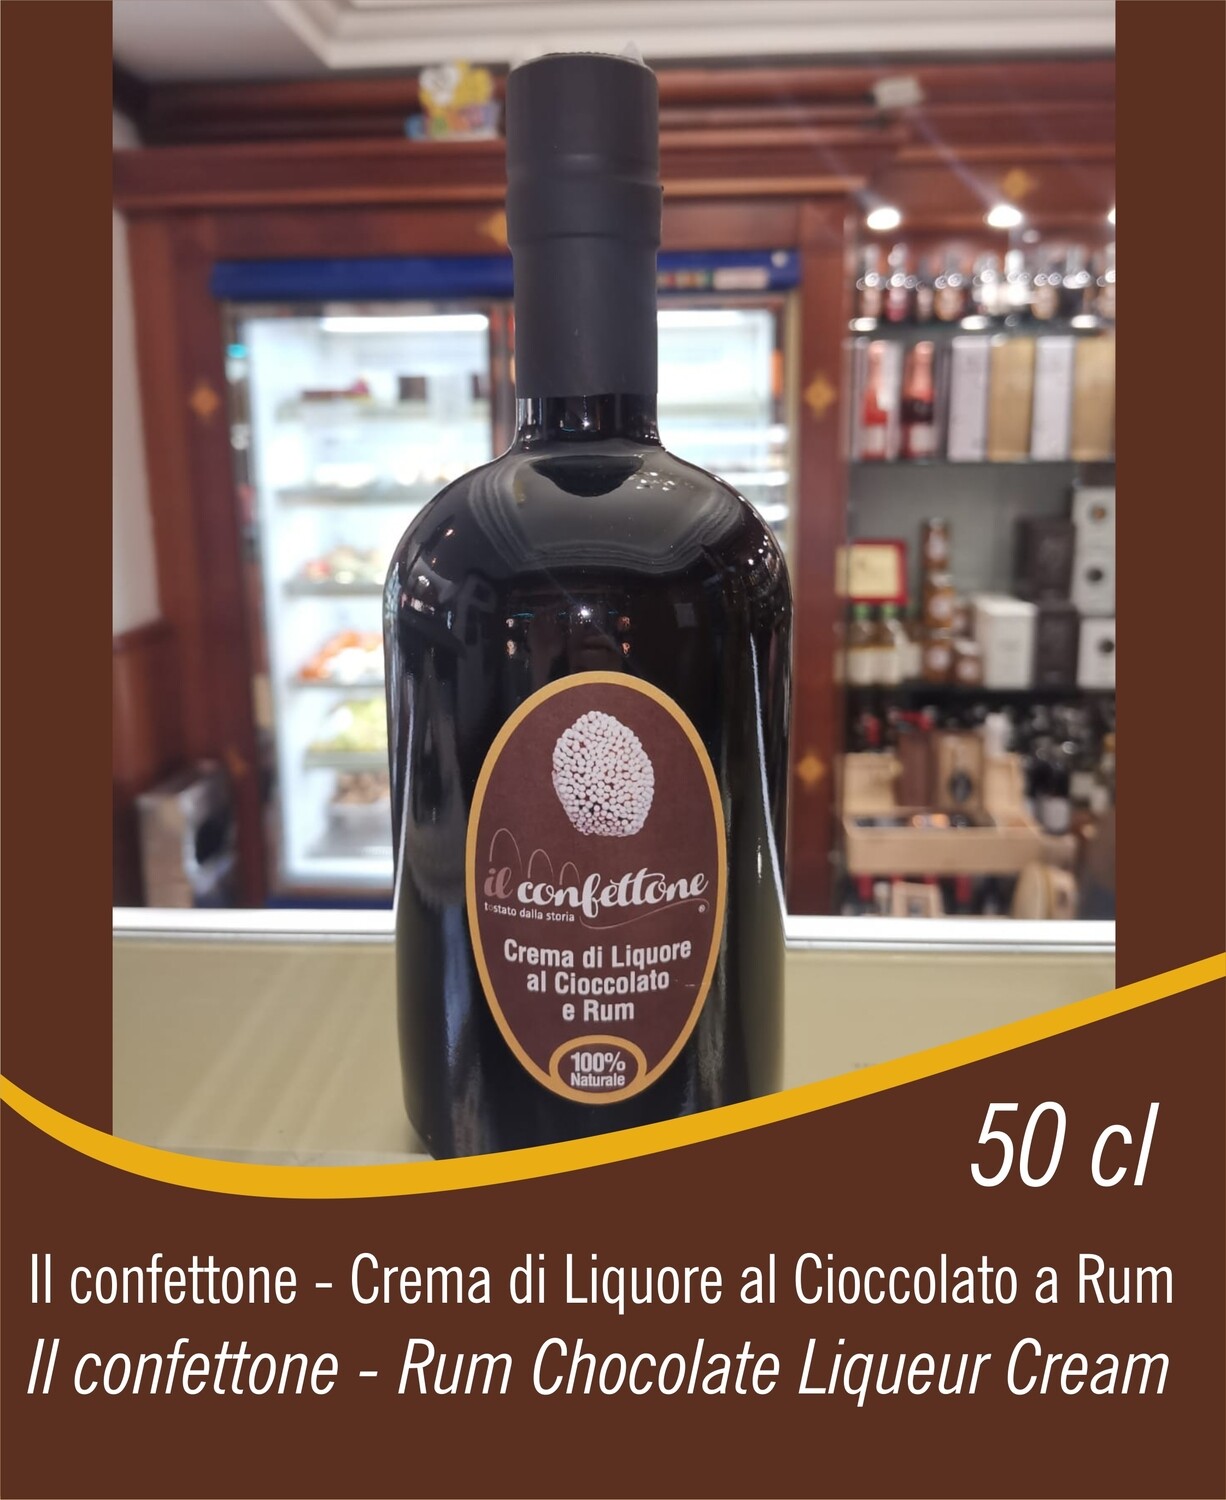 Il Confettone - Crema di Liquore al Cioccolato a Rum